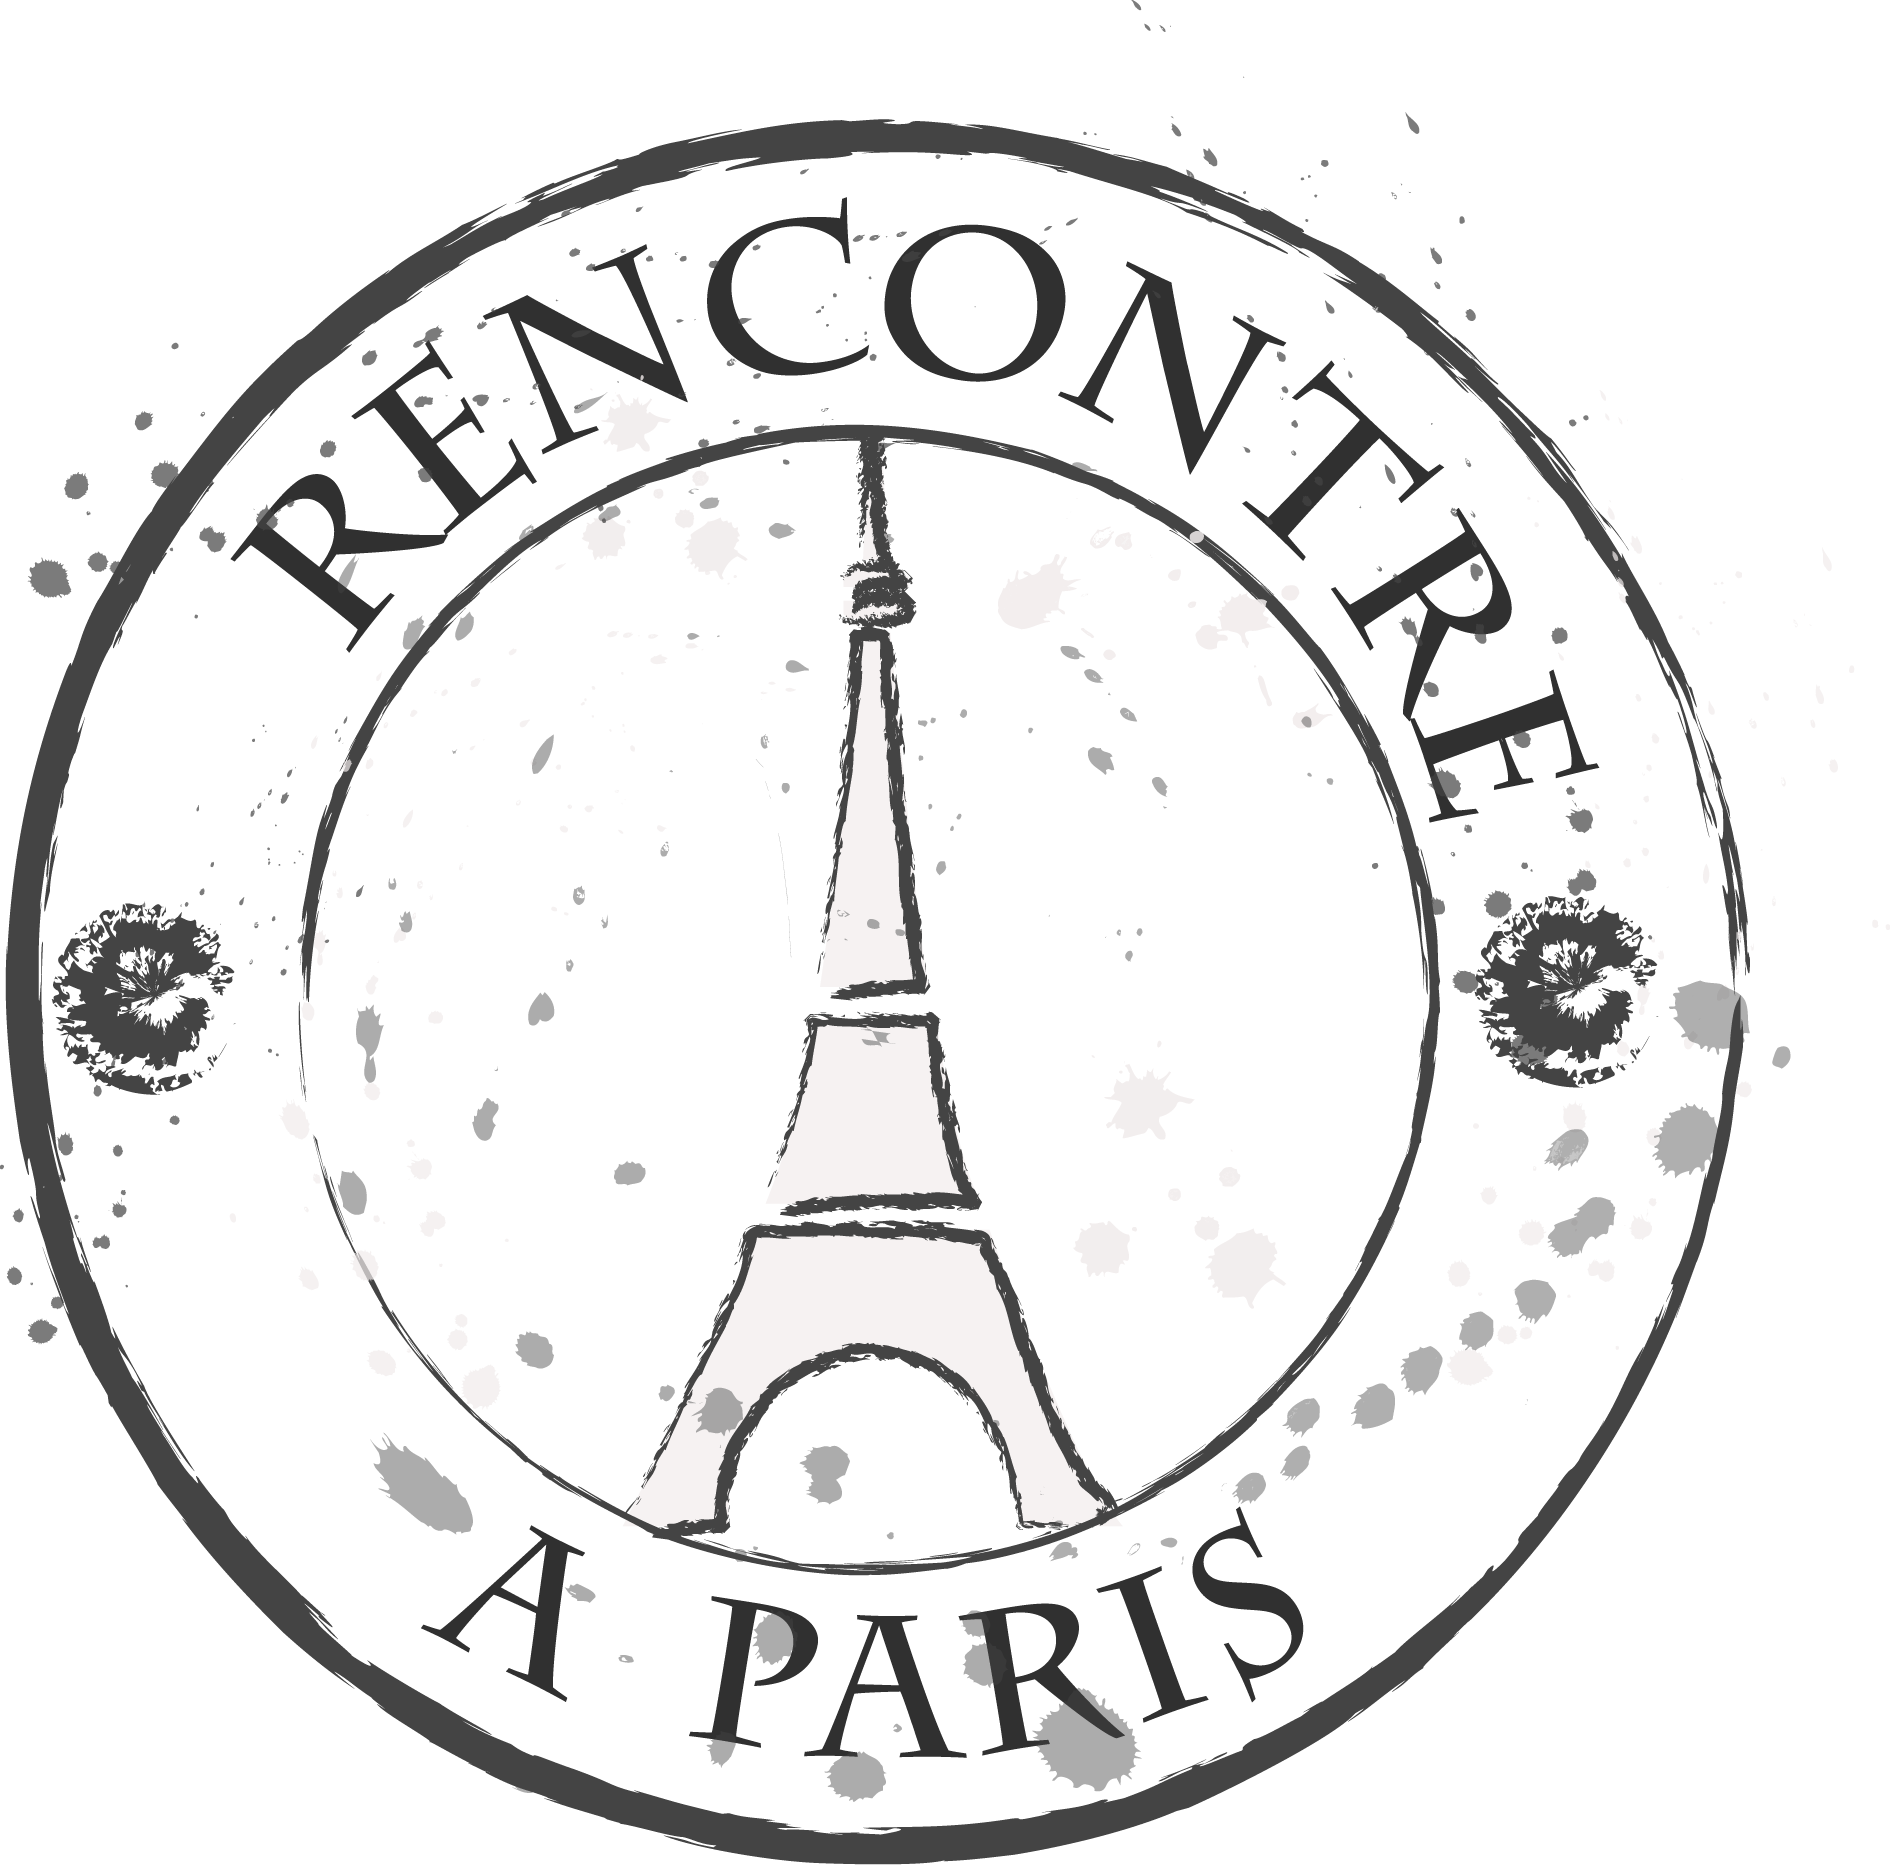 A symbol of paris. Символ Парижа Эйфелева башня. Печать Париж. Надпись Париж. Paris надпись.